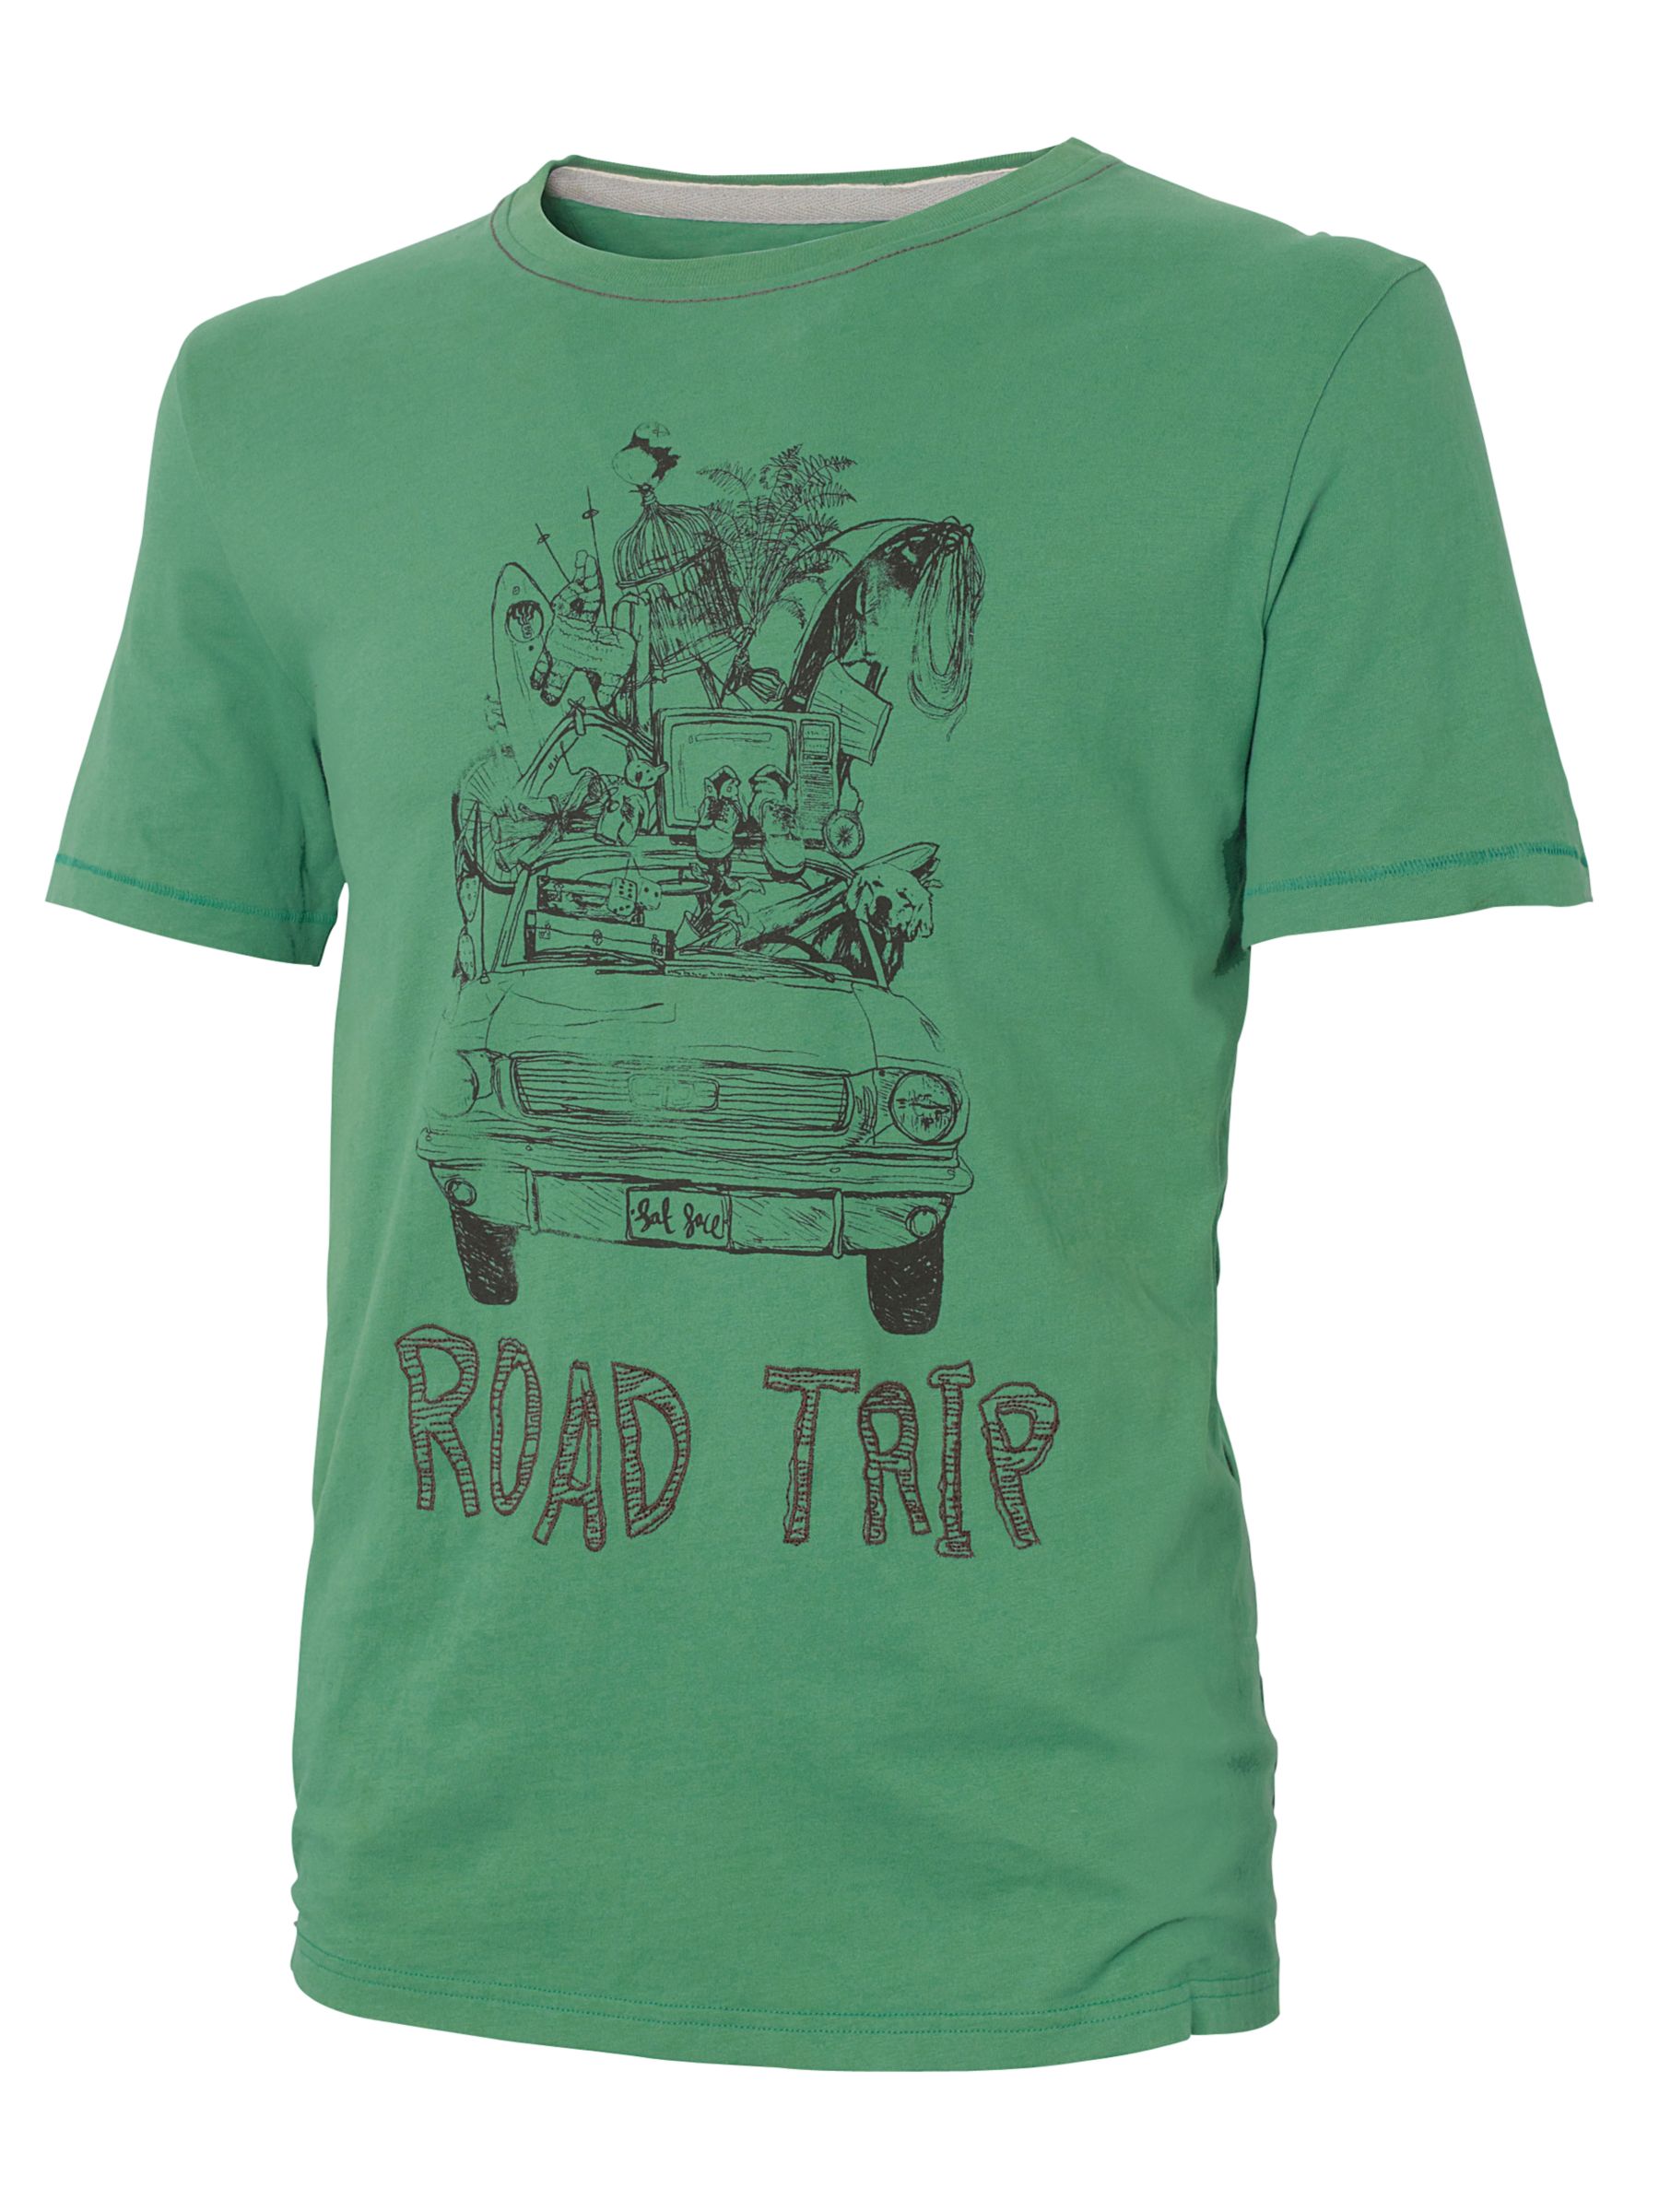 Road Trip T-Shirt, Grass Green